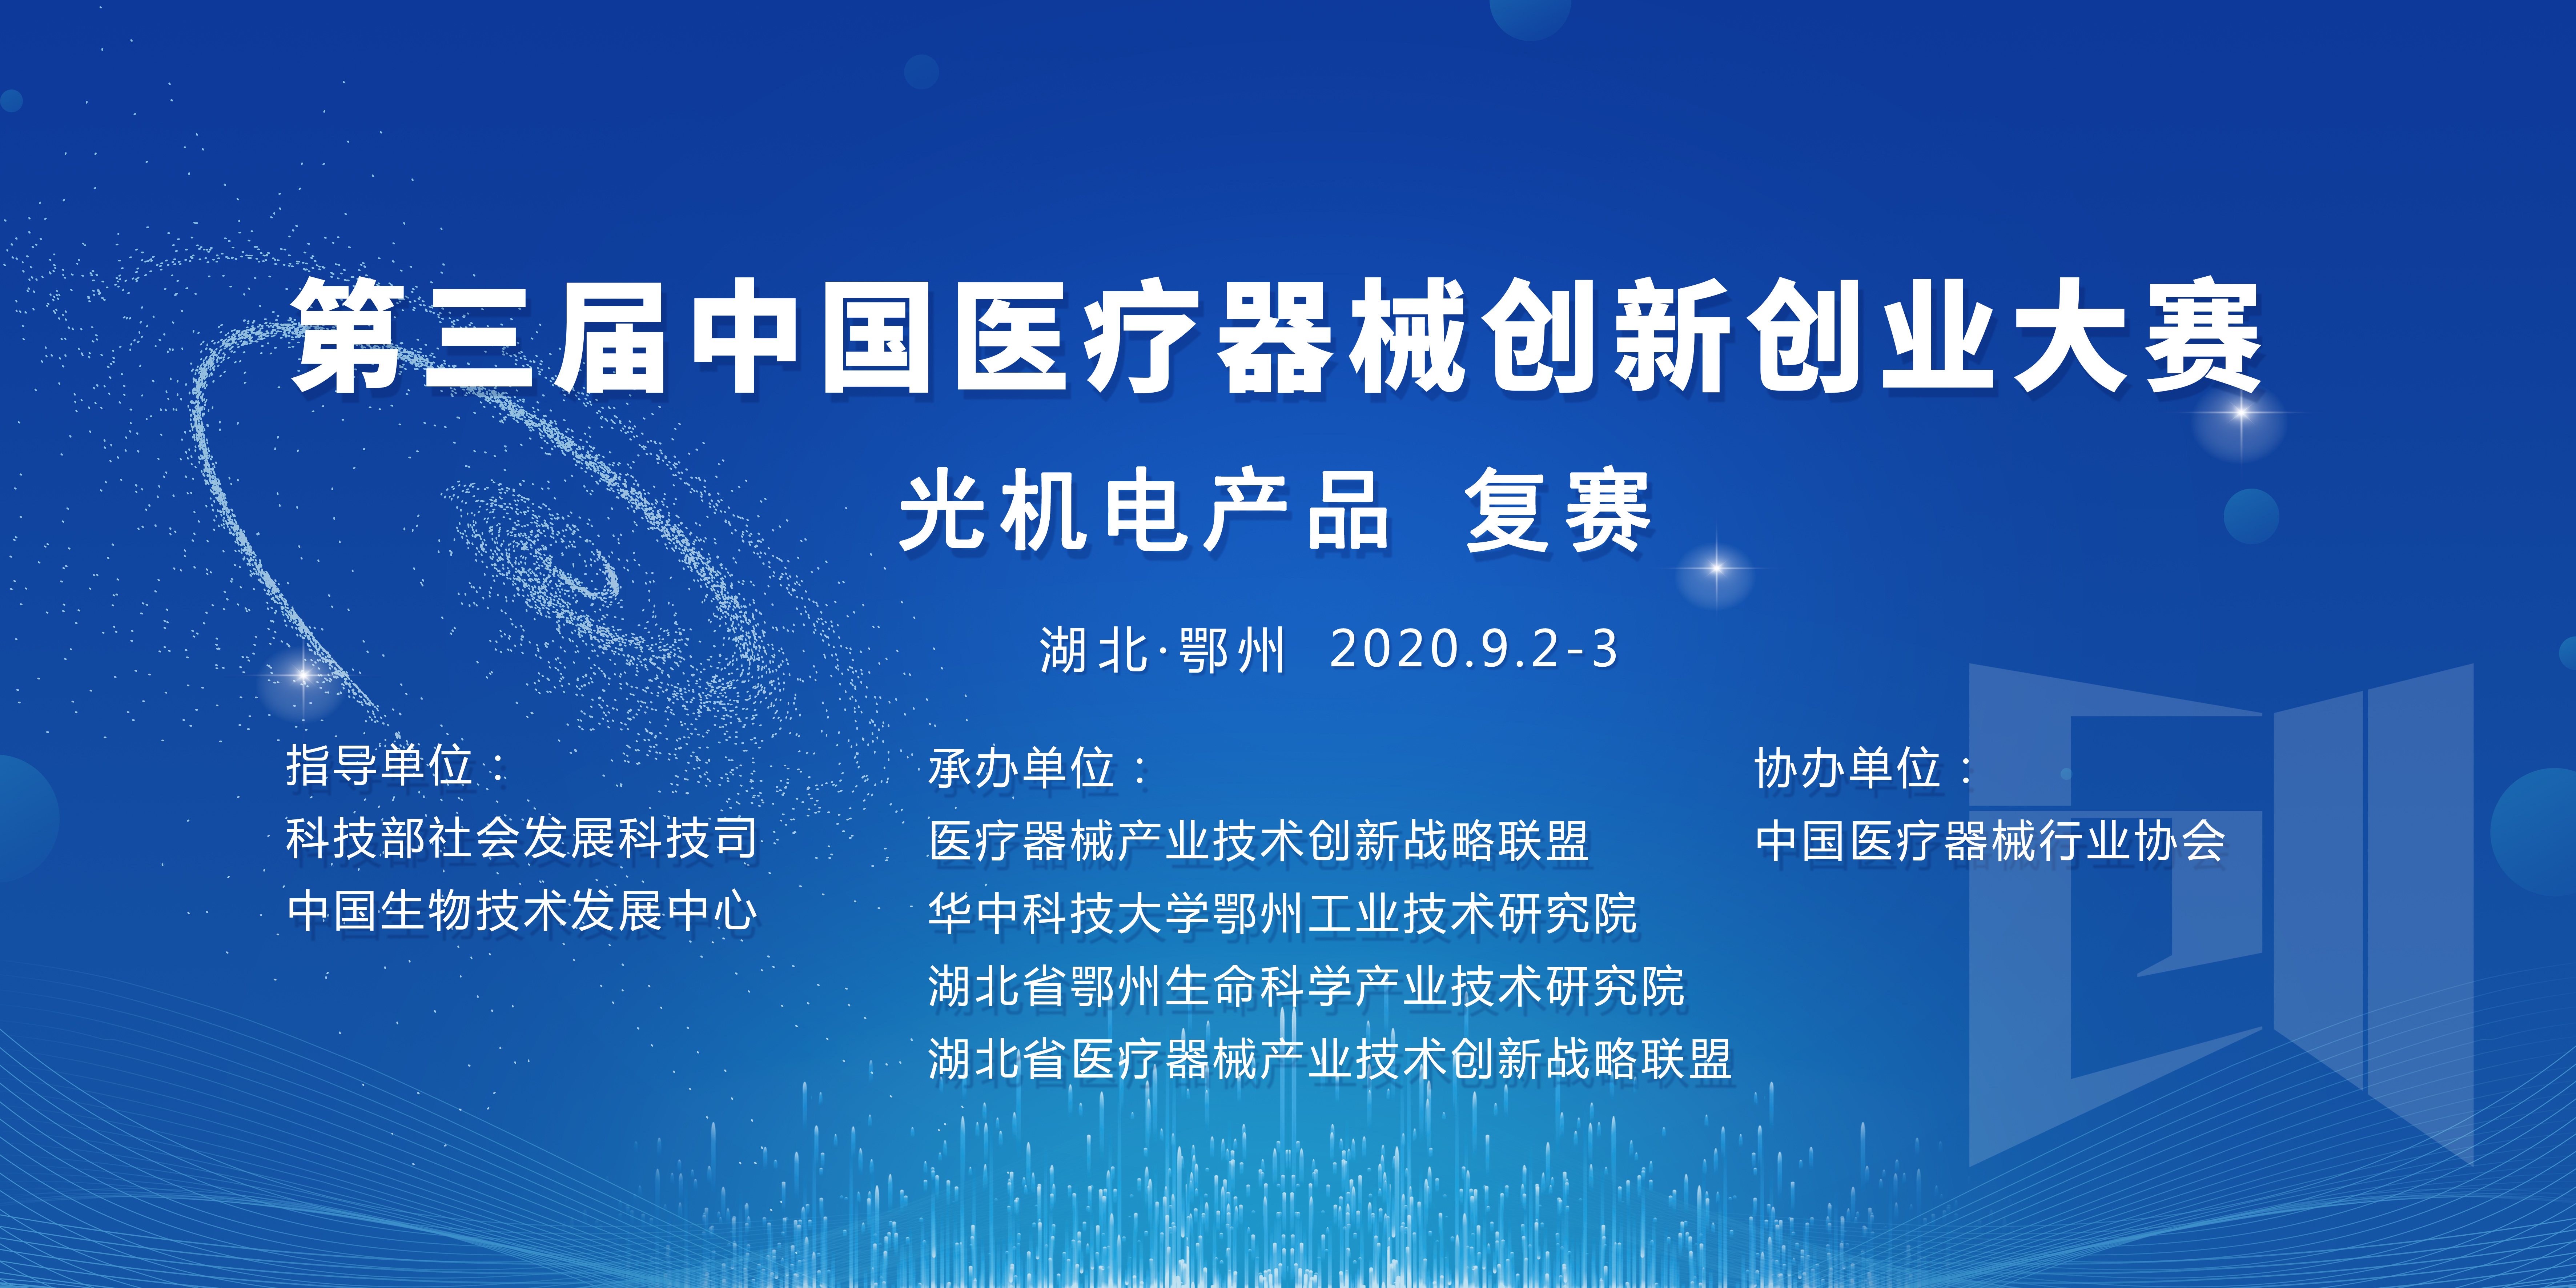 第三届中国医疗器械创新创业大赛-光机电产品组复赛入围名单